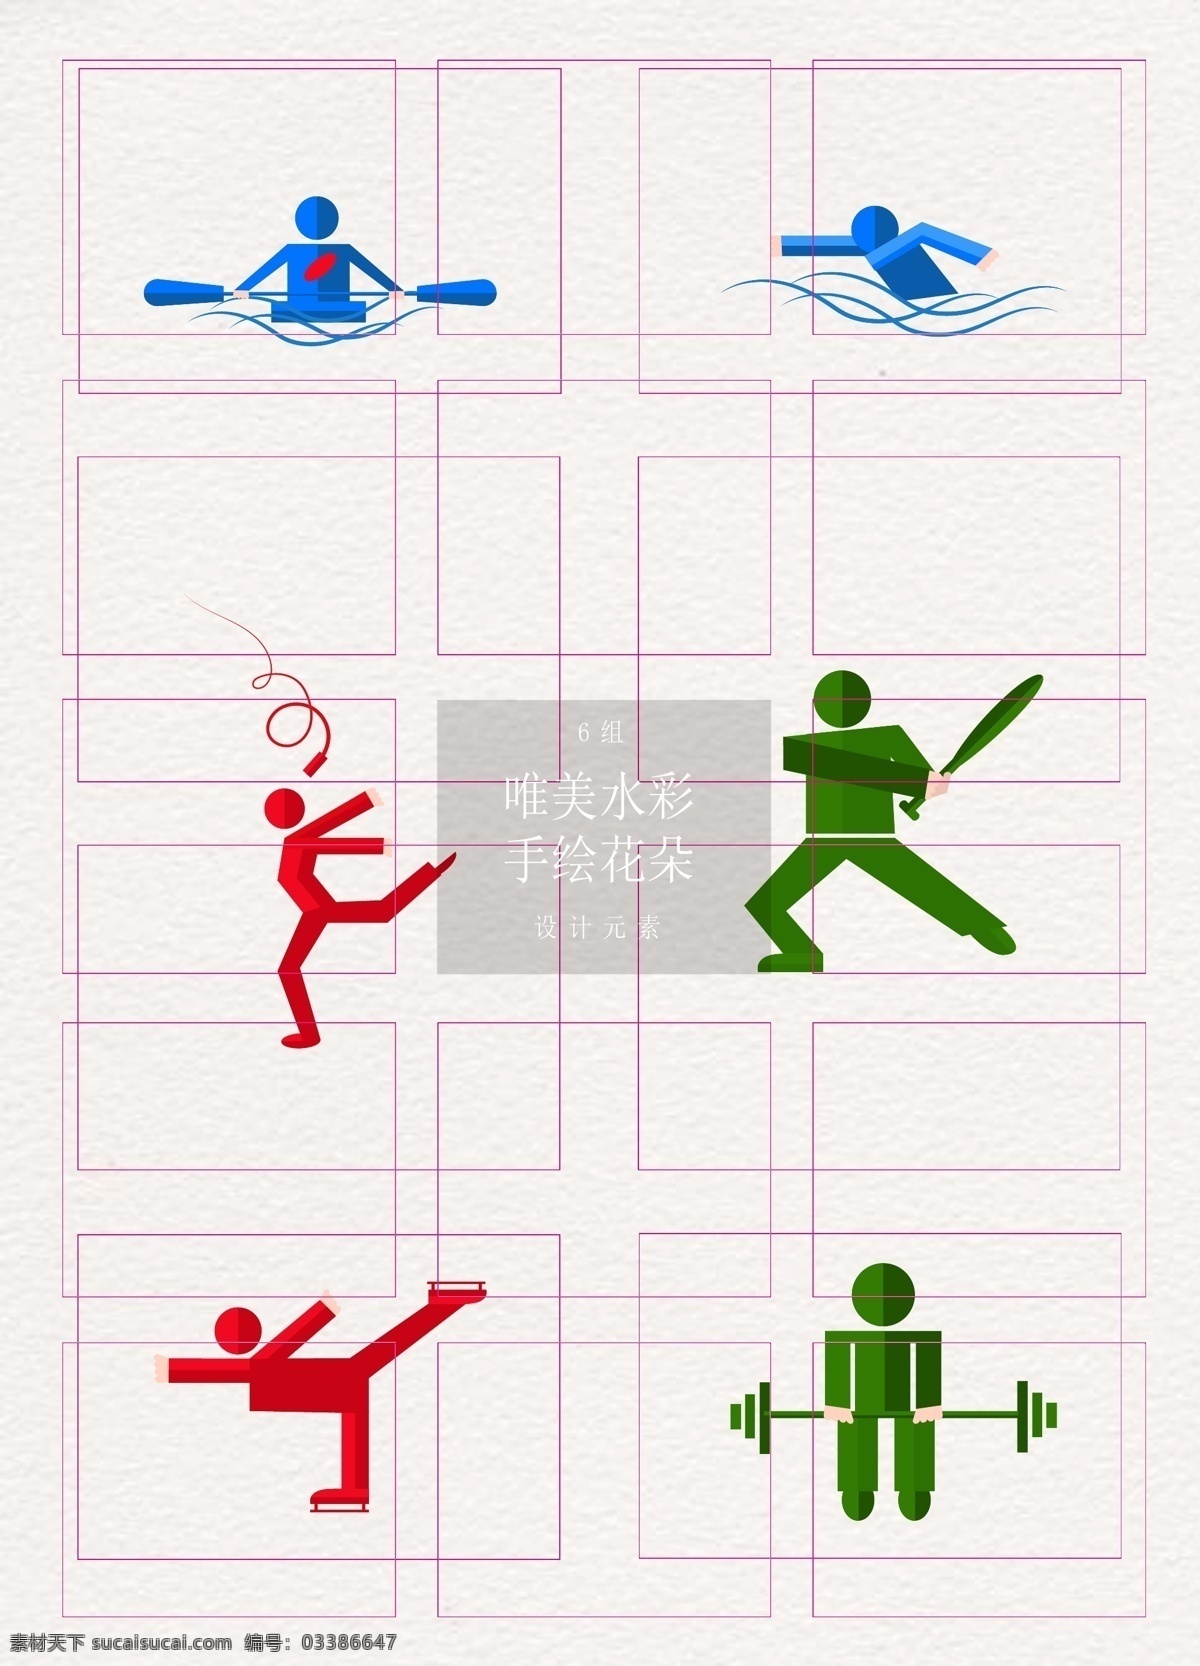 彩色 运动 图标 icon icon图标 体育运动 划船 游泳 体操 旅行图标 卡通icon 校园icon 运动图标 图标元素 体育比赛 曲棍球 滑冰 举重